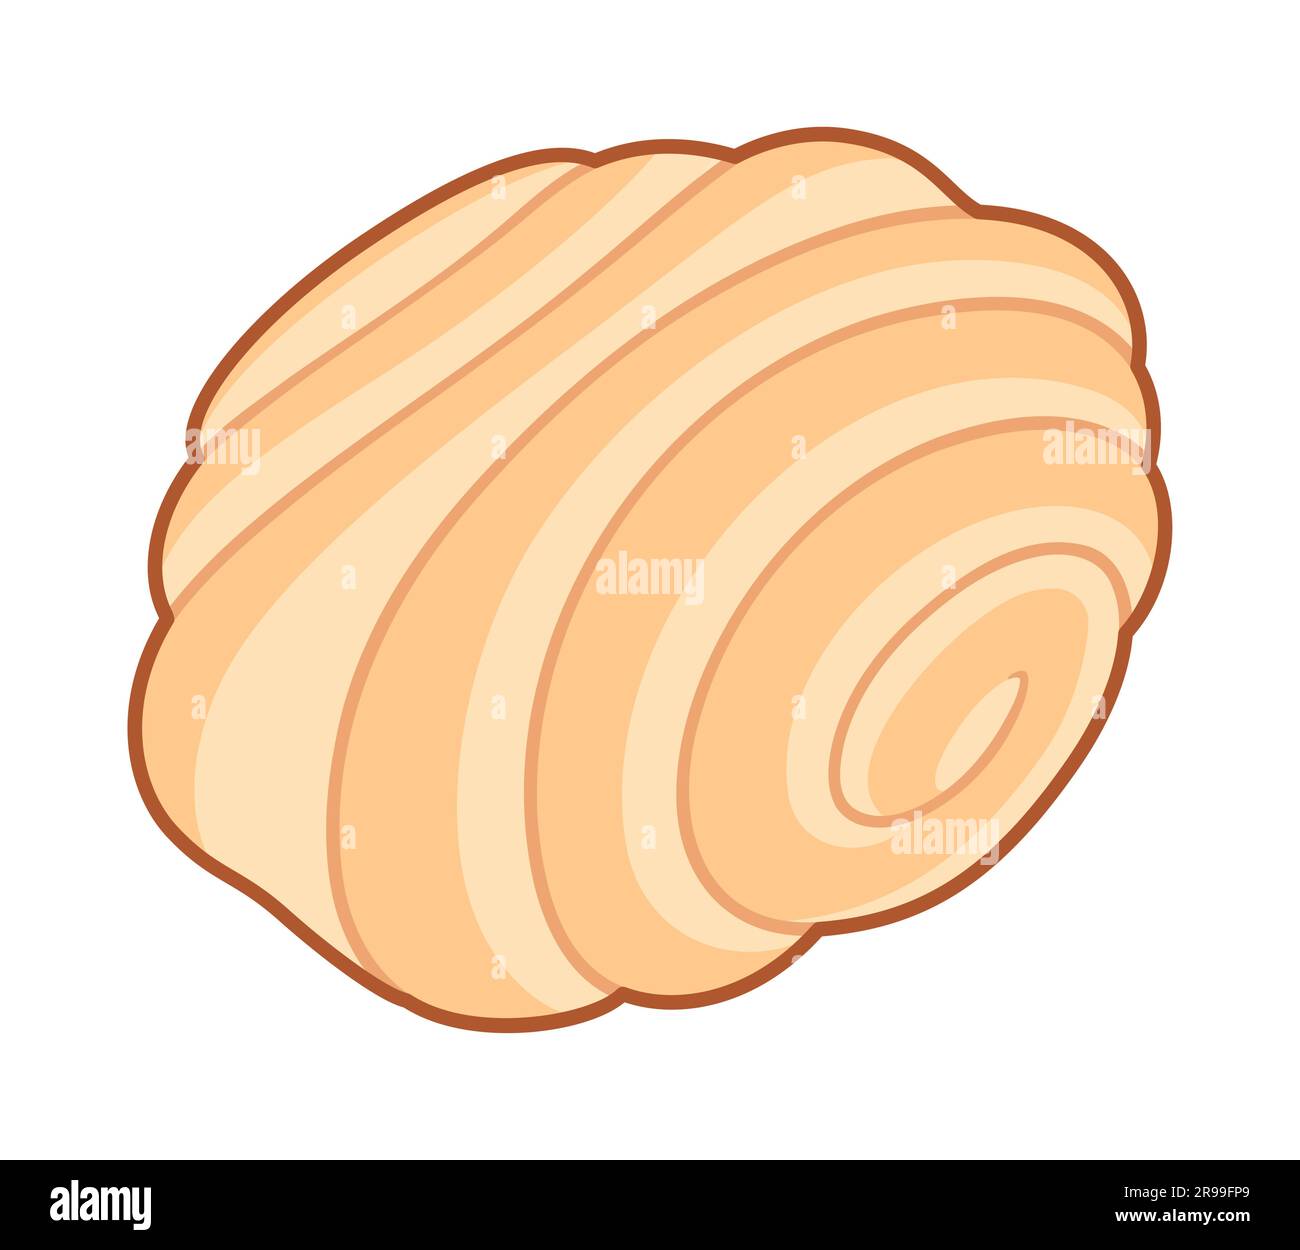 Rouleau de pâtisserie sucré, dessin animé. Pâte feuilletée en forme de spirale. Illustration de clip art vectoriel. Illustration de Vecteur